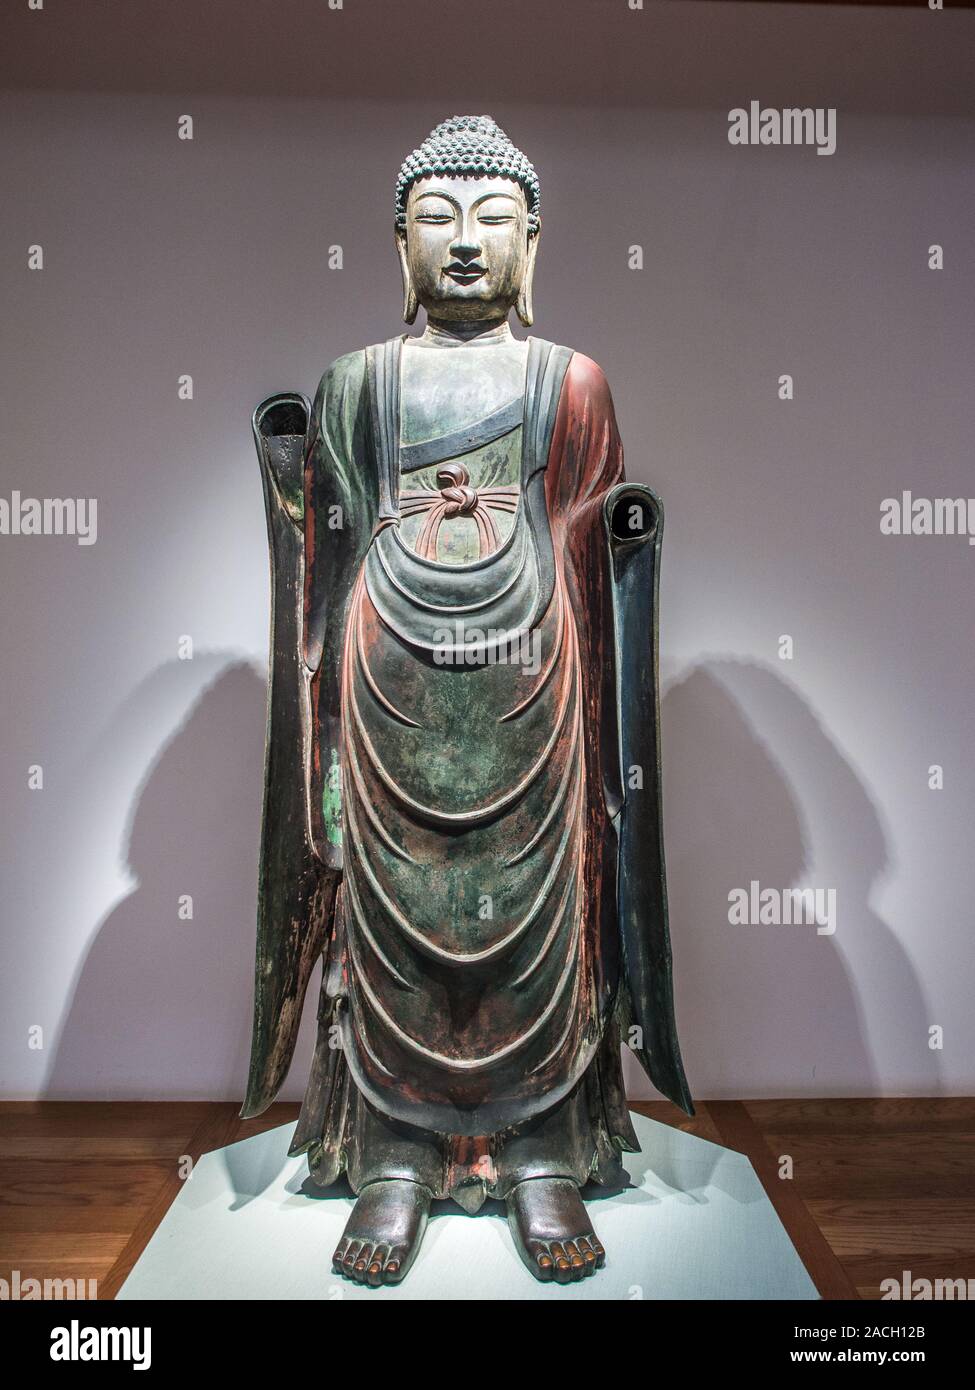 Bronze statue of Bhaisajyaguru Buddha, Gyeongju National Museum, South Korea Stock Photo